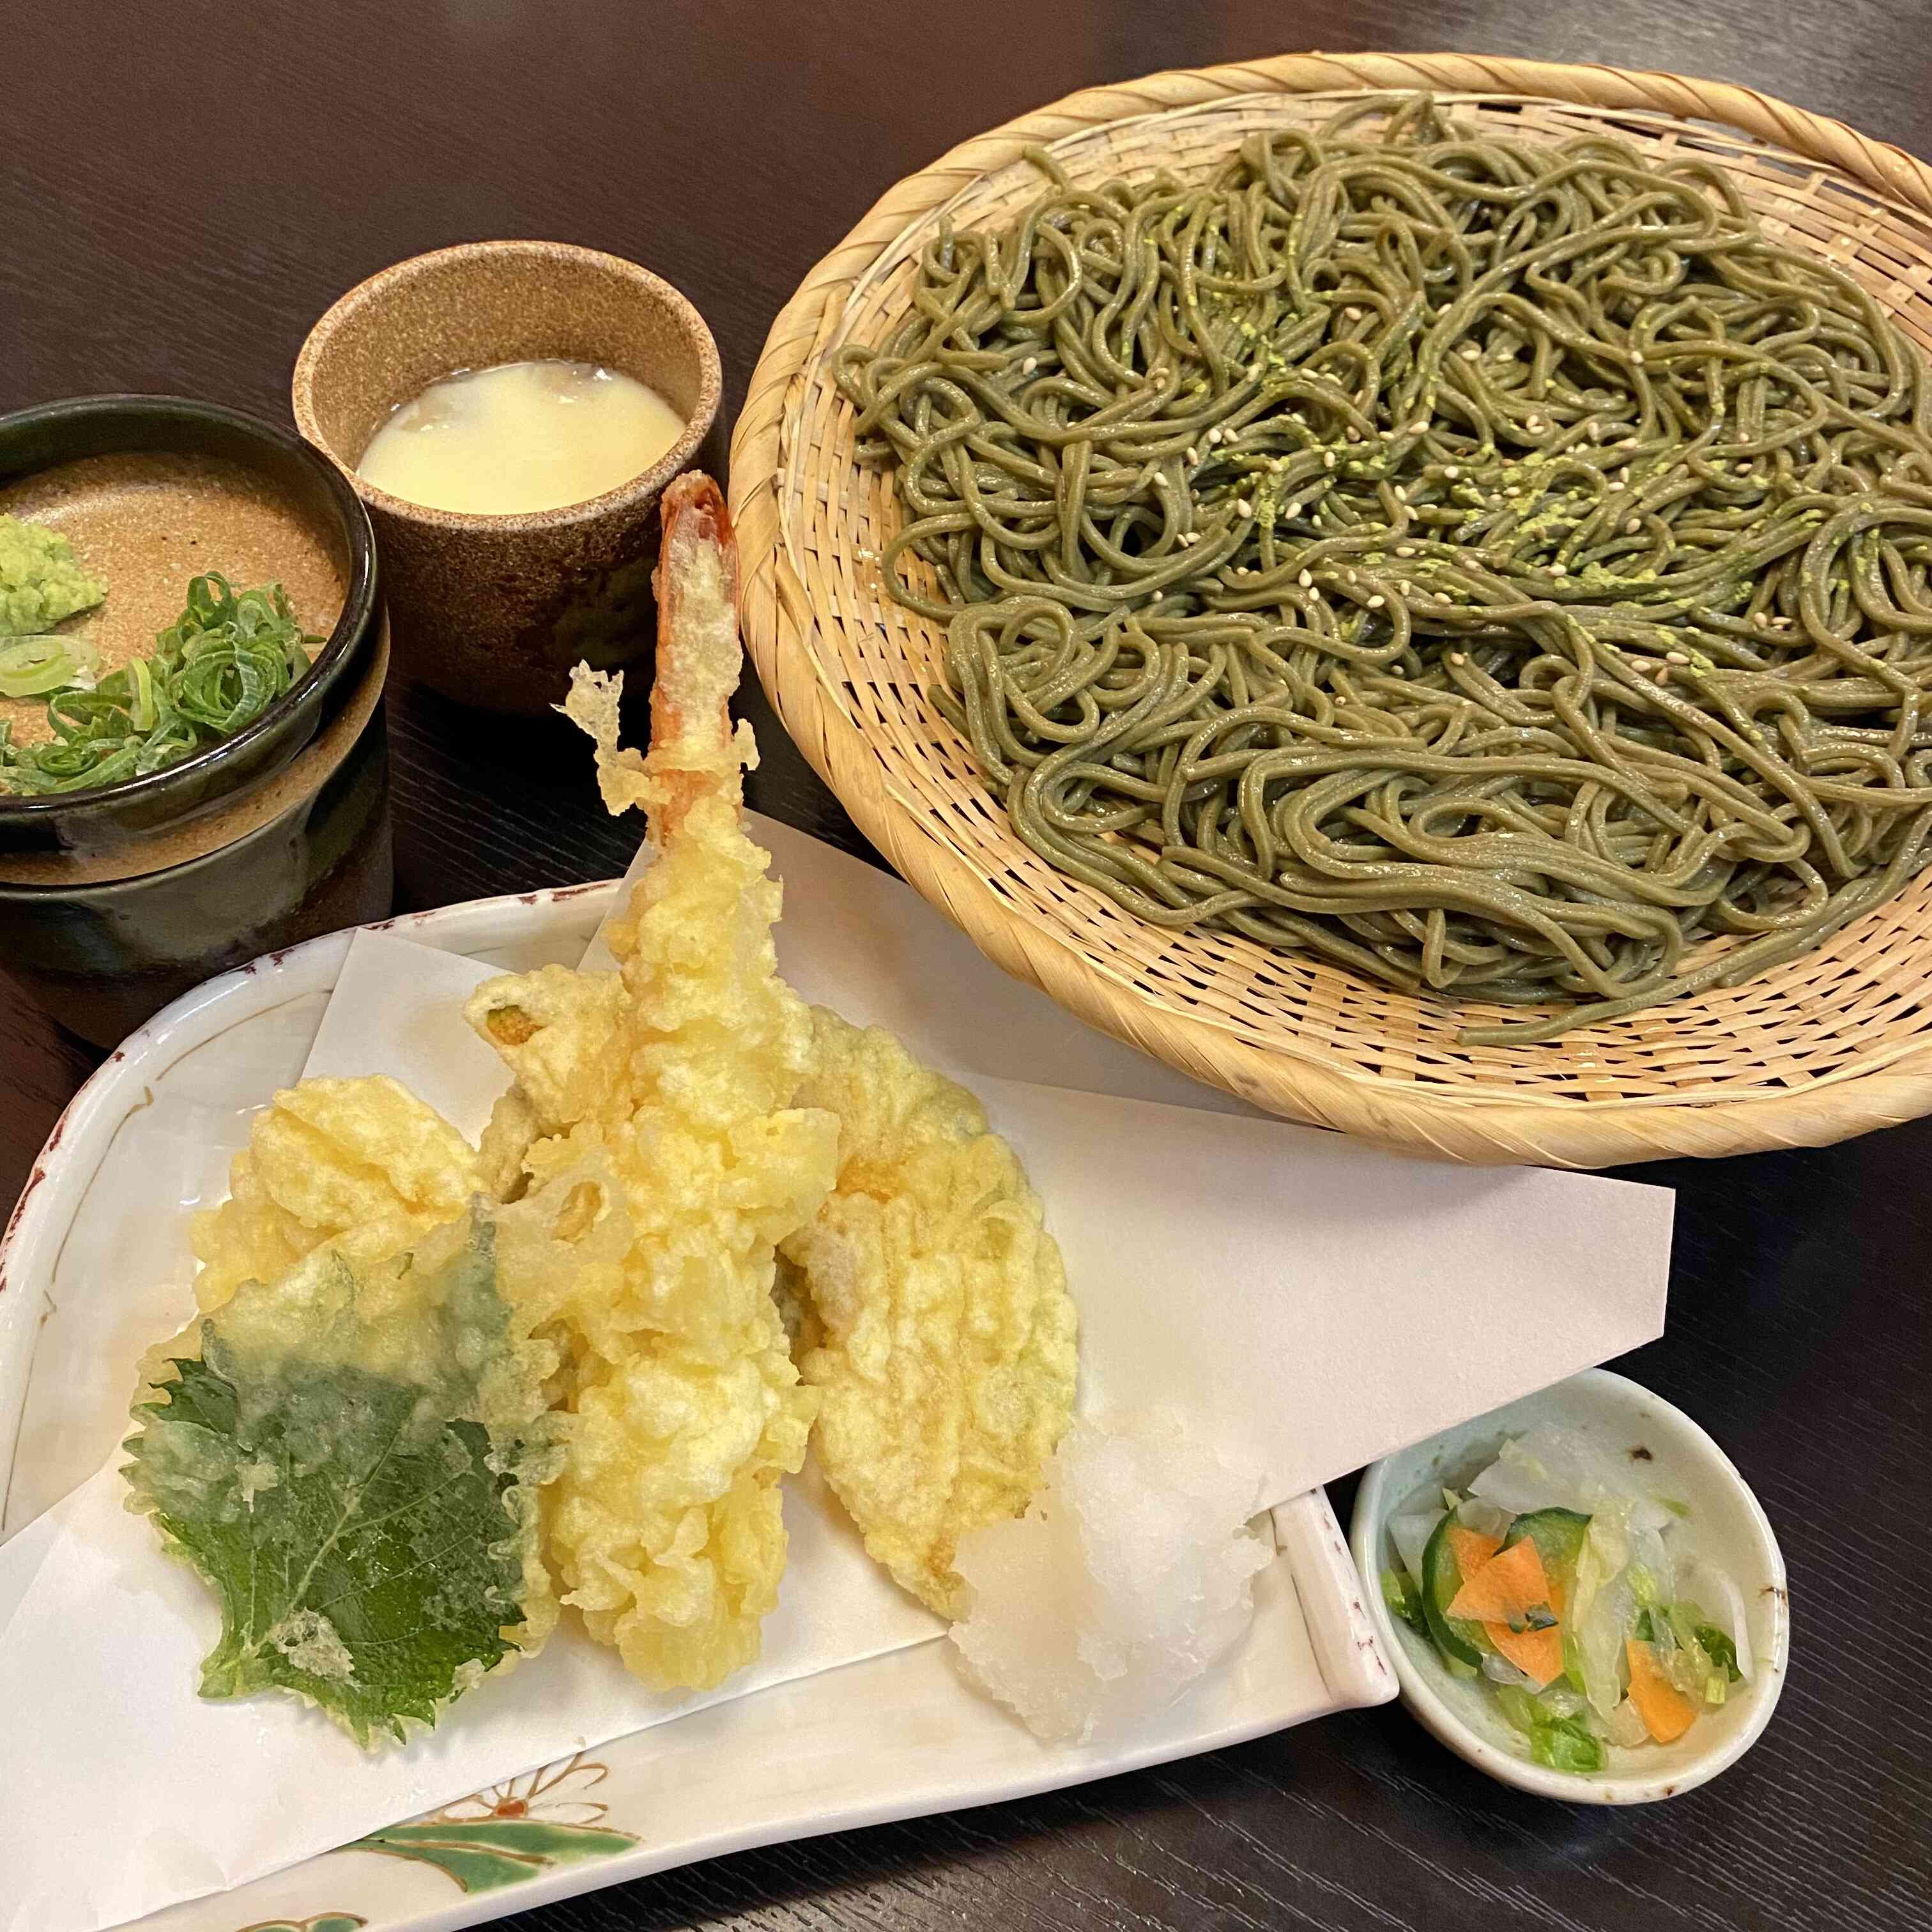 掛川茶そば天ざる　掛川茶パウダーを練りこんだ茶そばと揚げたて天ぷらのセットです。